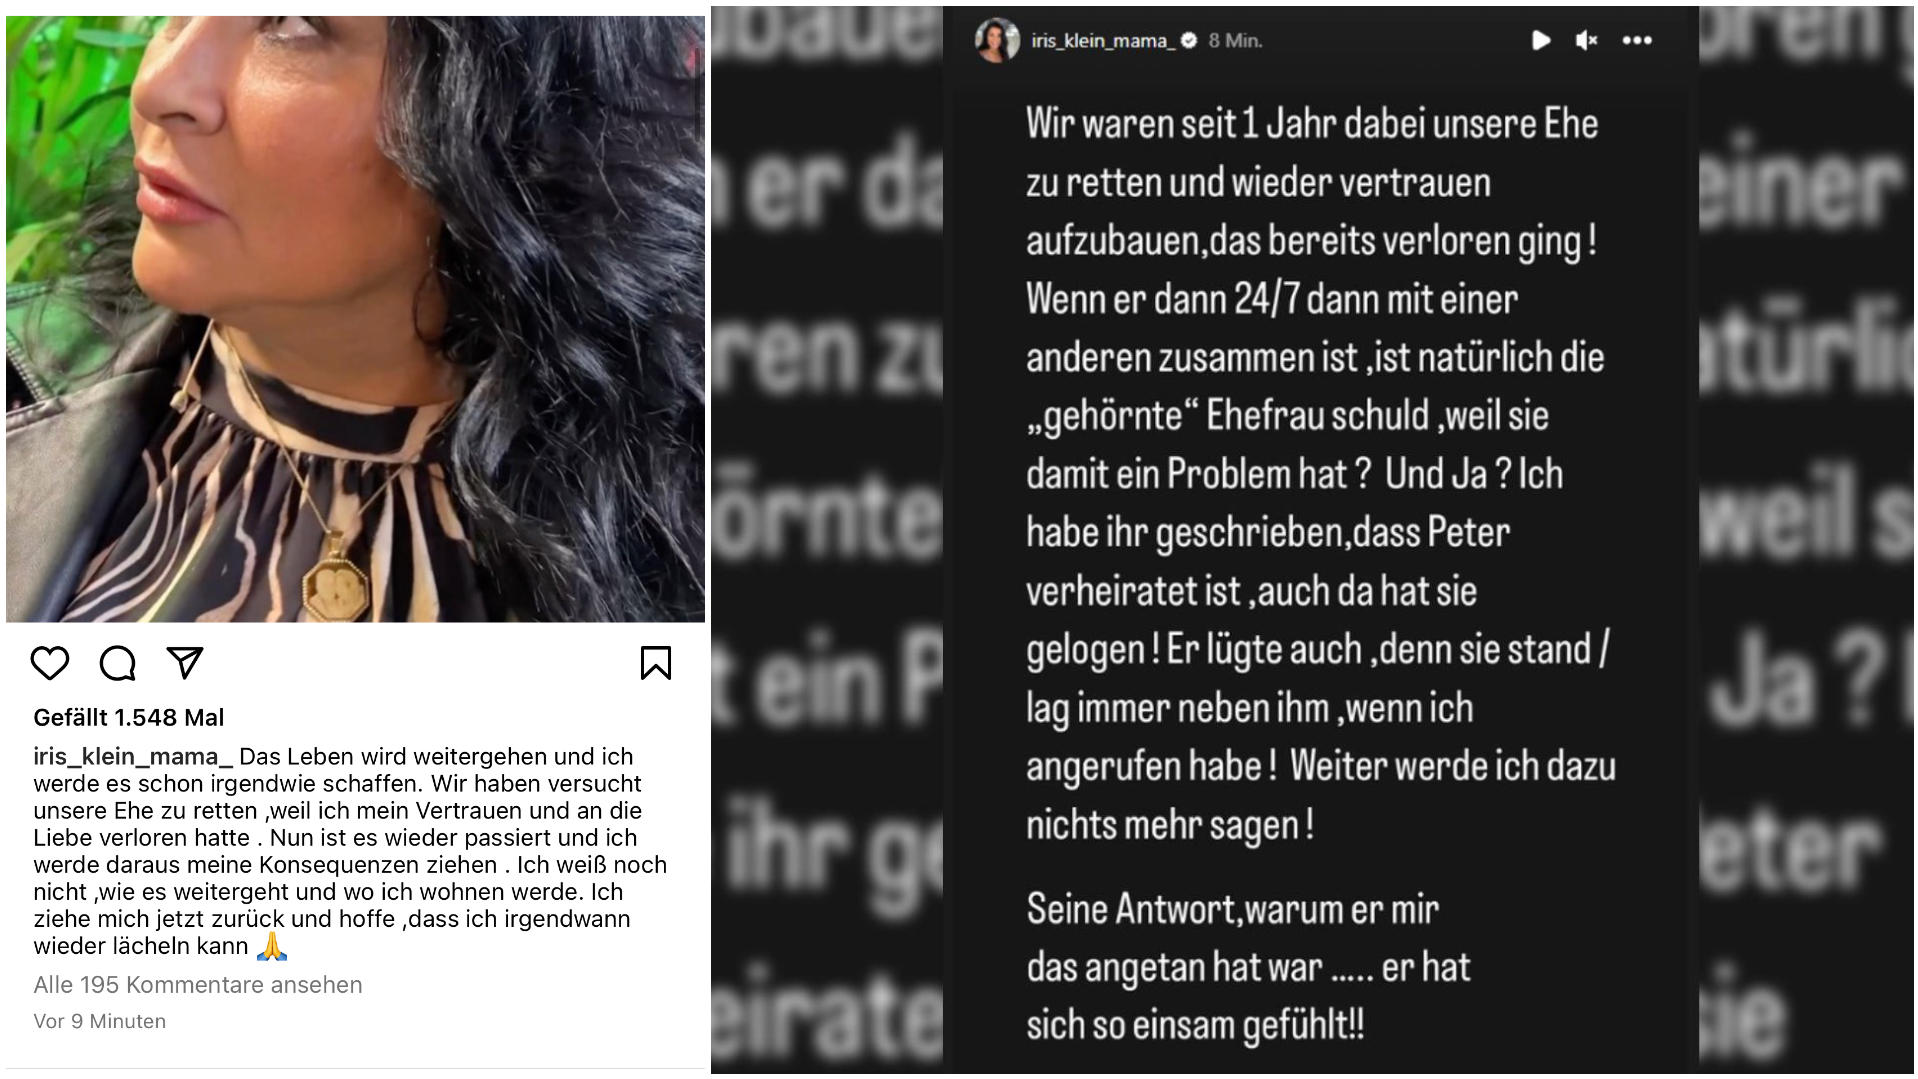 Iris Klein meldet sich auf Instagram mit weiteren Statements - GEGEN ihren Ehemann Peter.